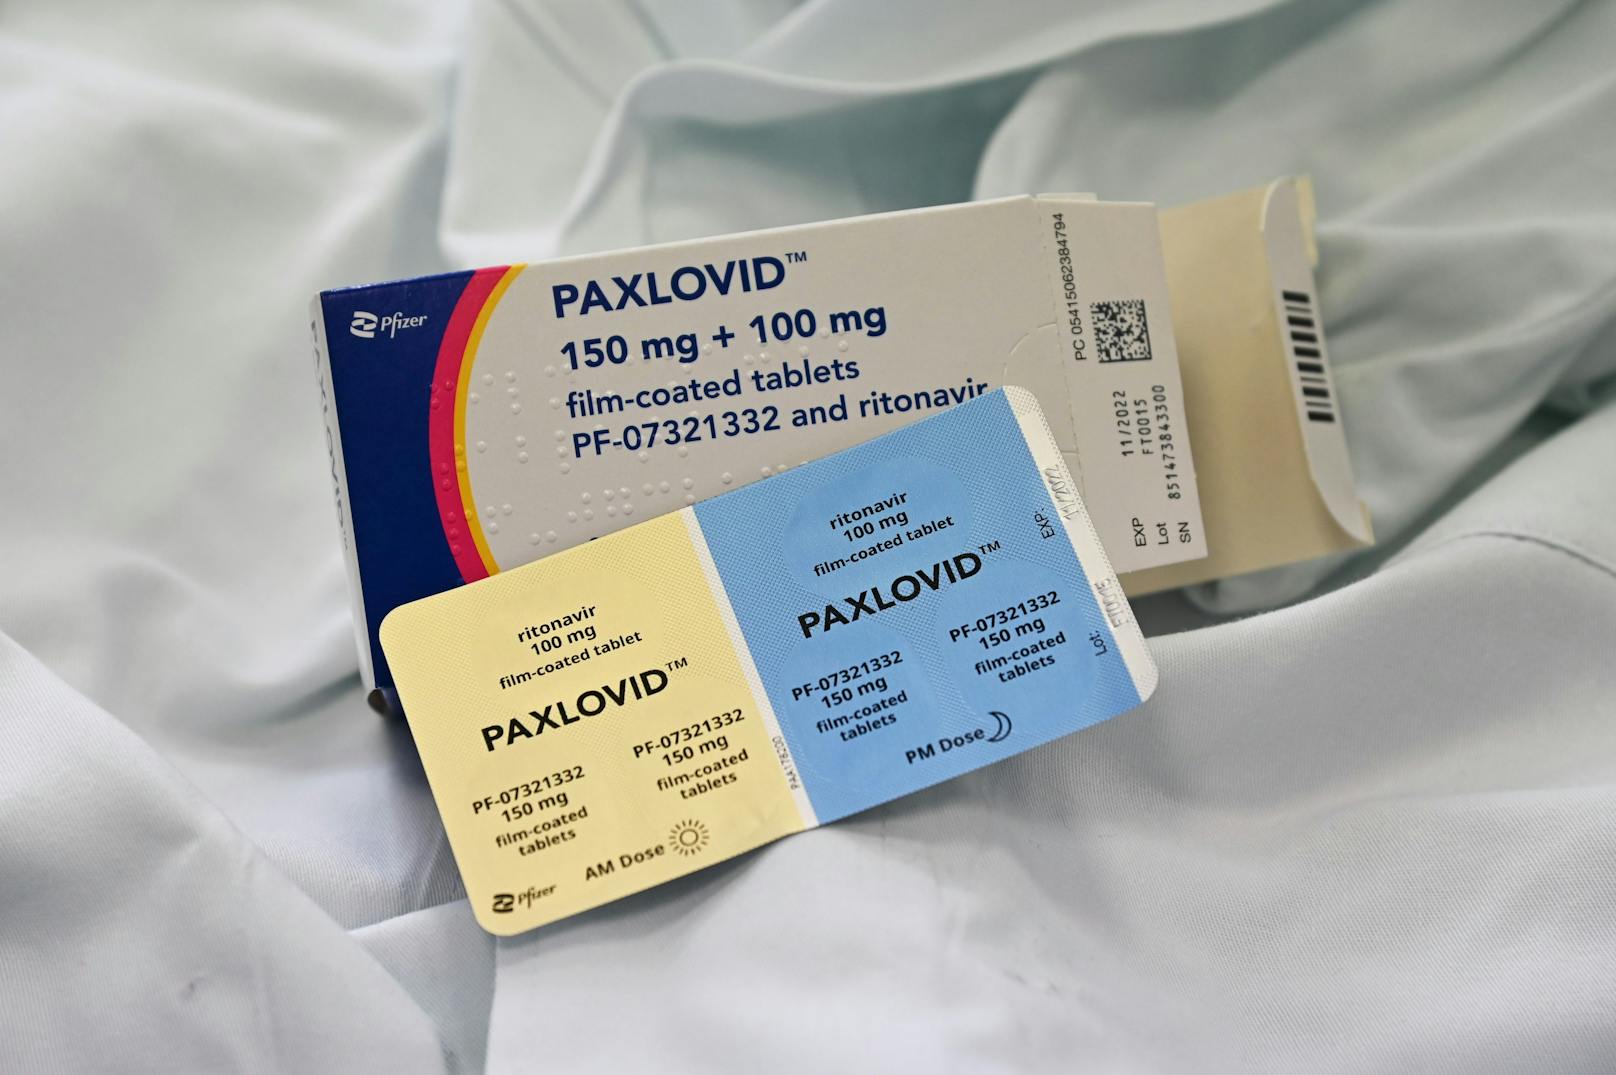 Medikamente wie Paxlovid sind kein Ersatz für die Impfung, könnten in Zukunft aber besonders wichtig werden, weil sie offenbar einen Effekt gegen die verschiedenen SARS-CoV-2-Varianten aufweisen.